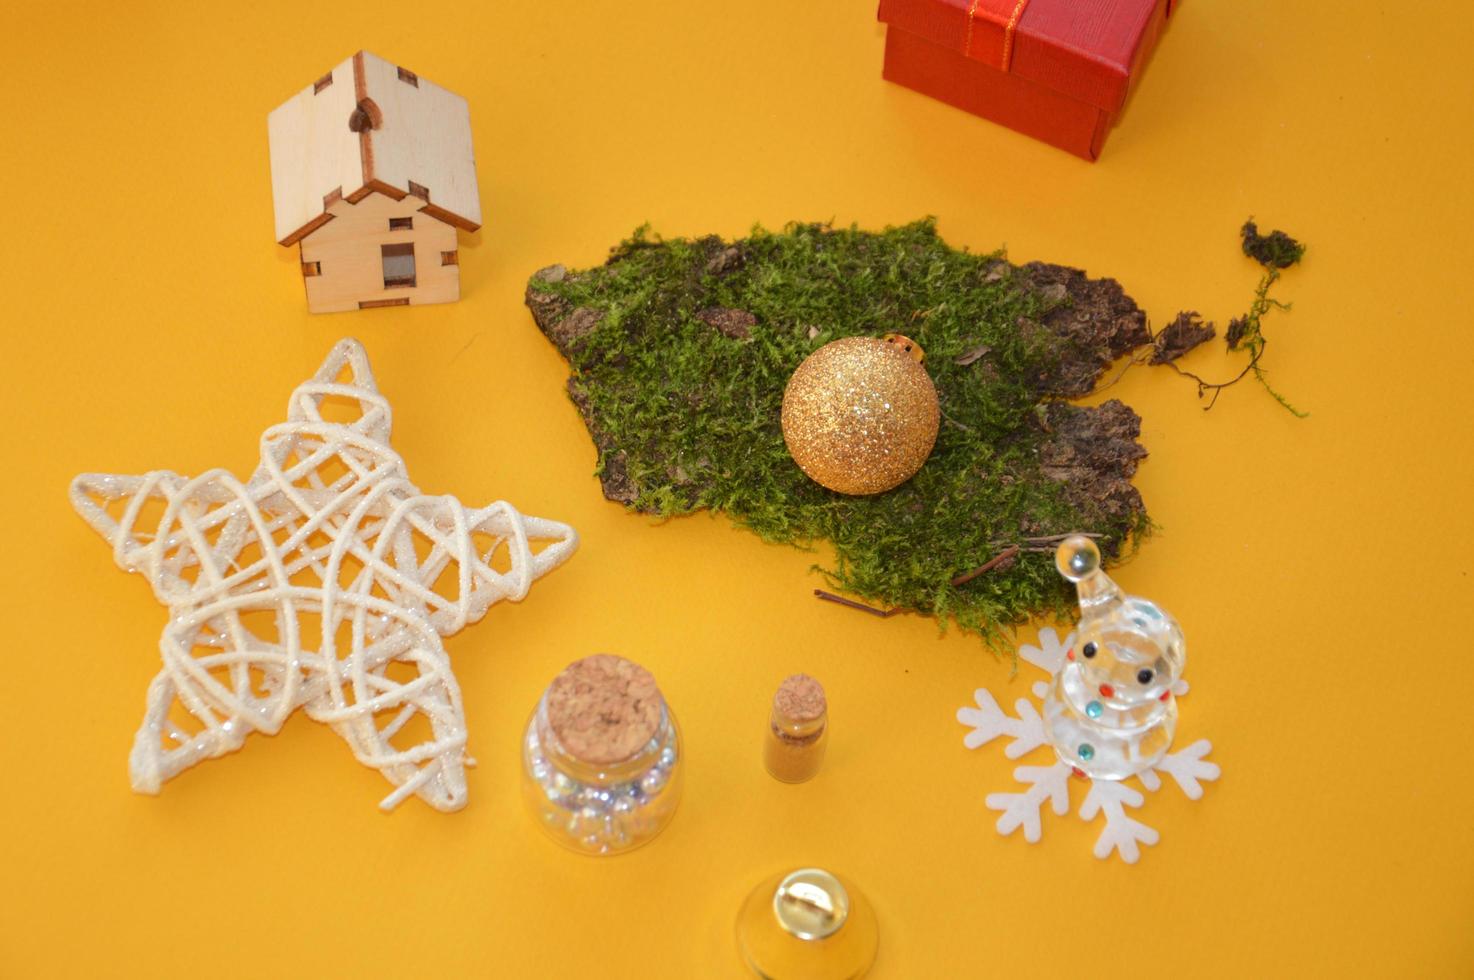 composição de brinquedos de ano novo e natal foto